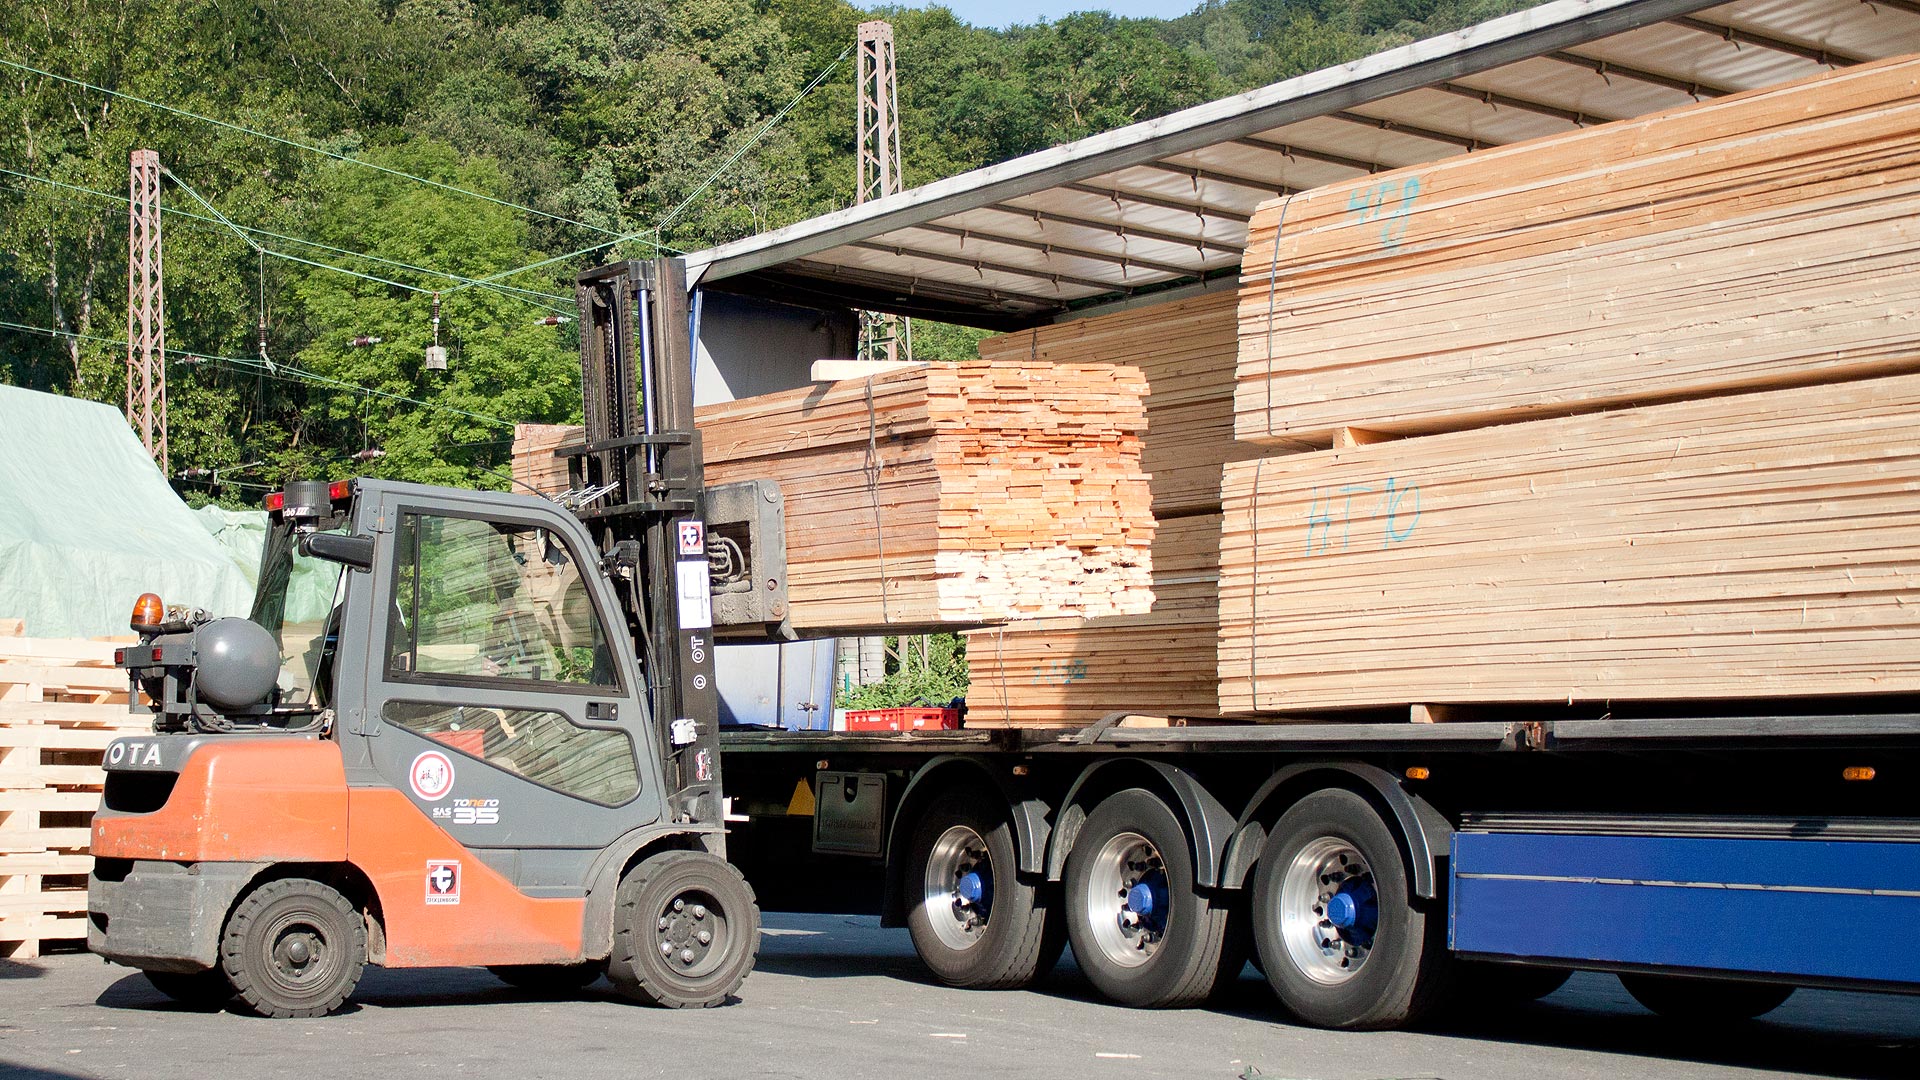 LKW Transport von Holz, Paletten und Holzkisten